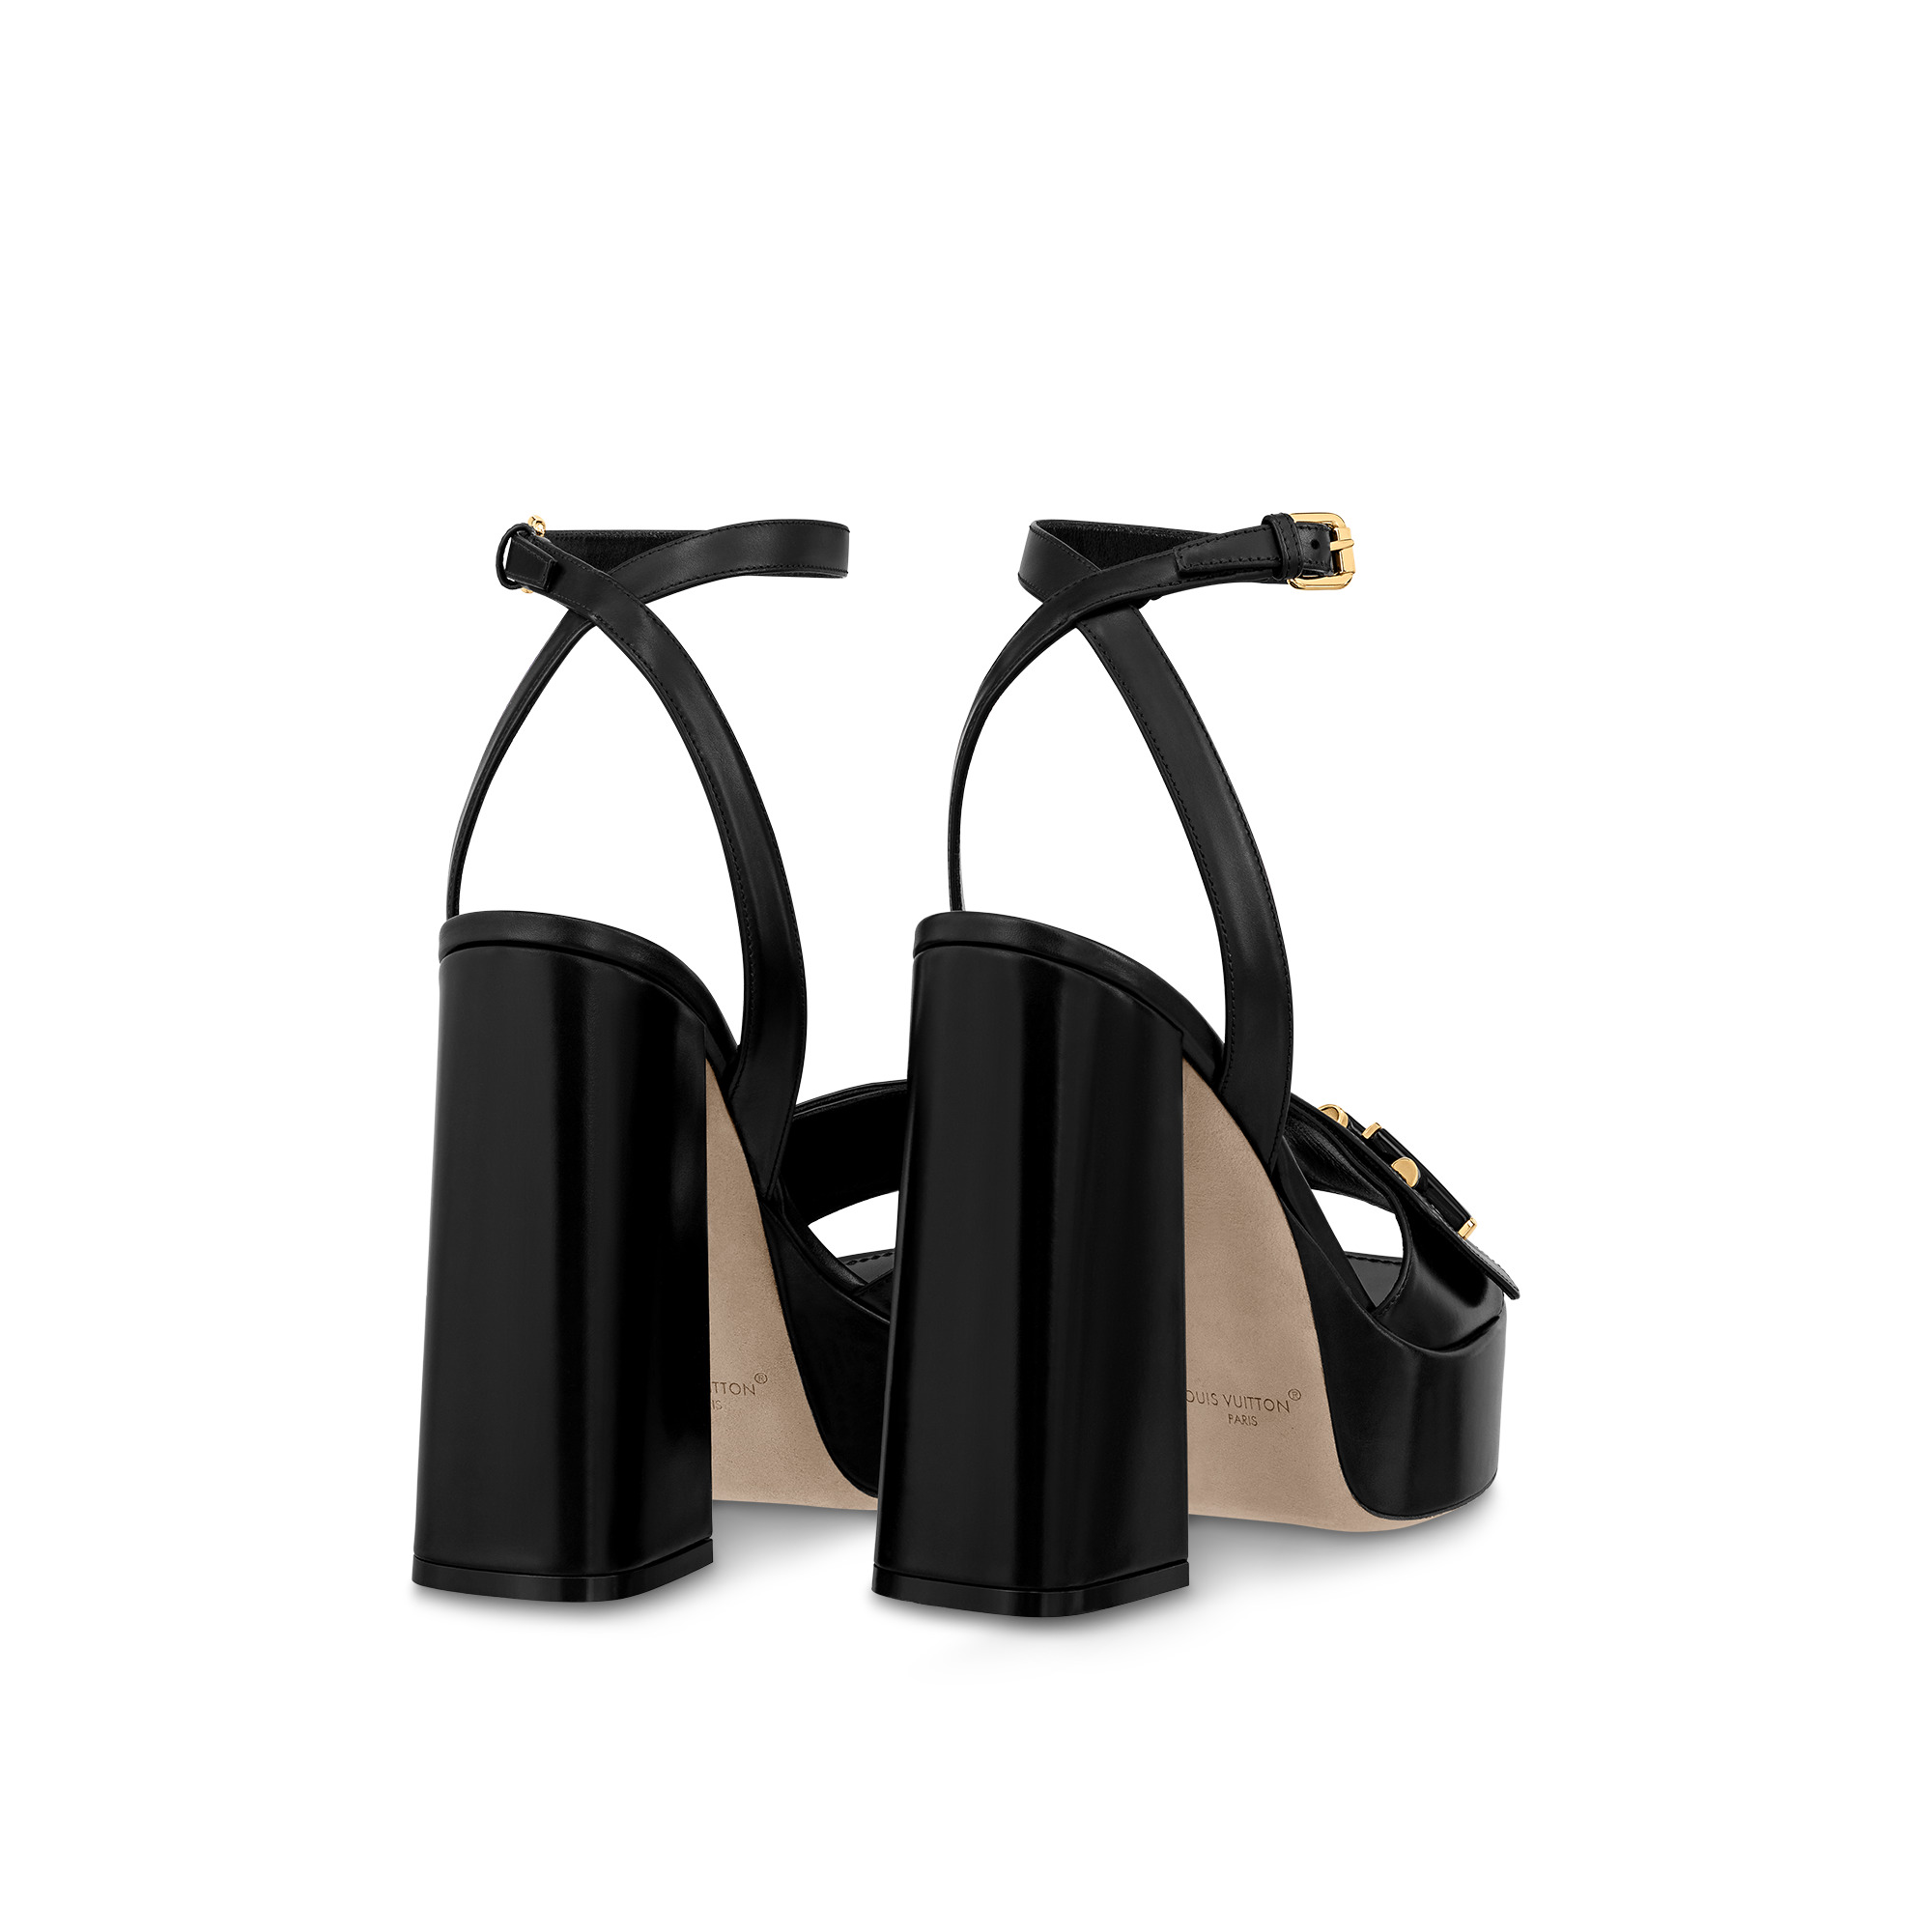 Louis Vuitton LV Archlight 2.0 Platform Ankle Boot, Black, 34